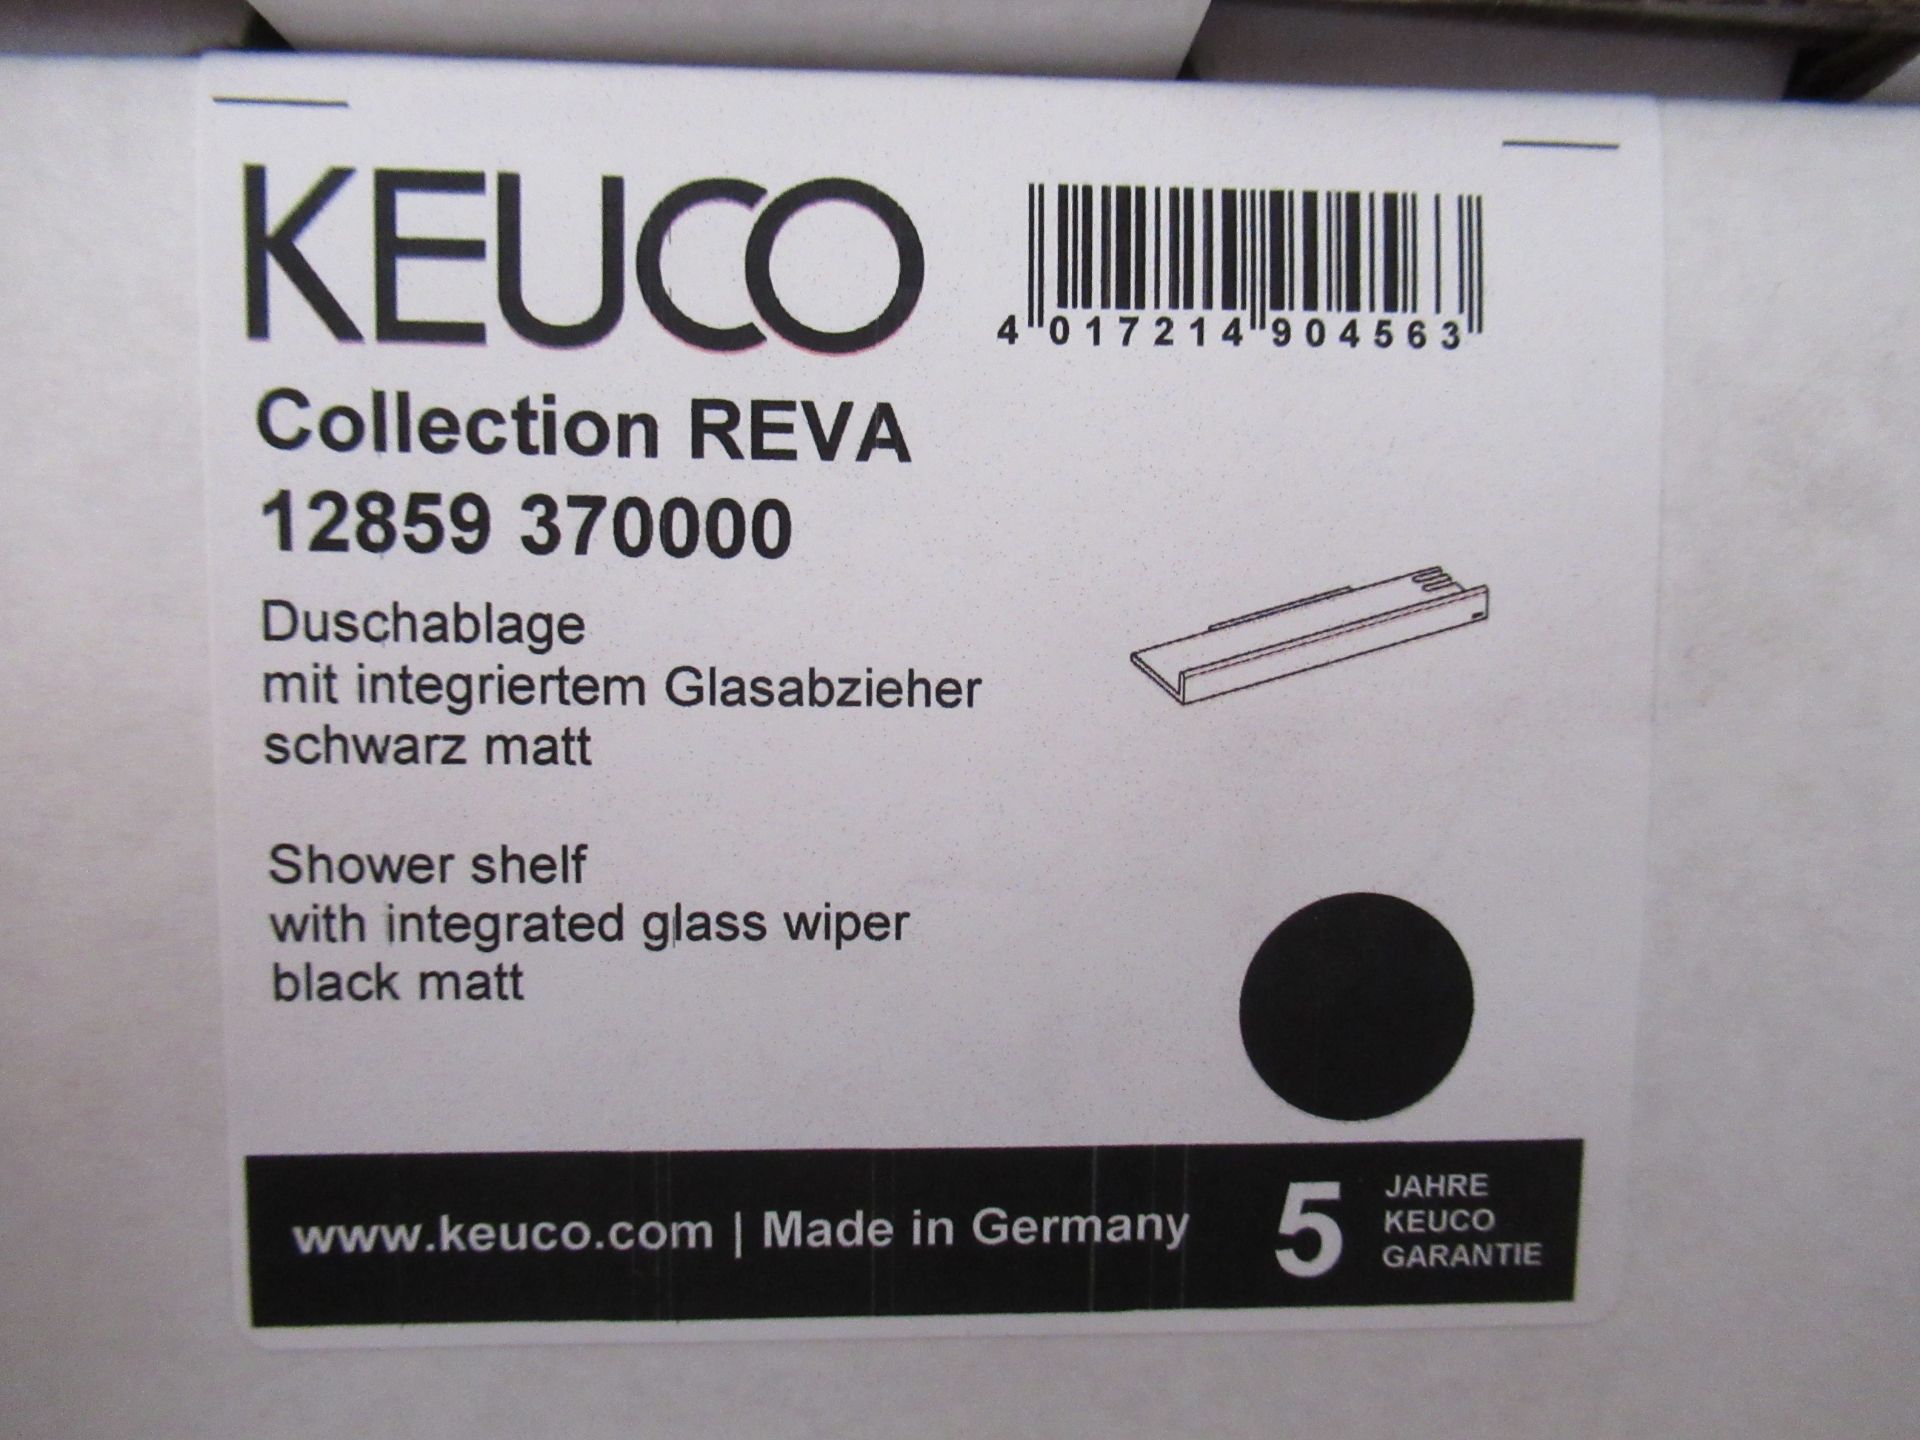 3 x Keuco Collection Reva Shower Shelf, Black Matt, P/N 12859-370000